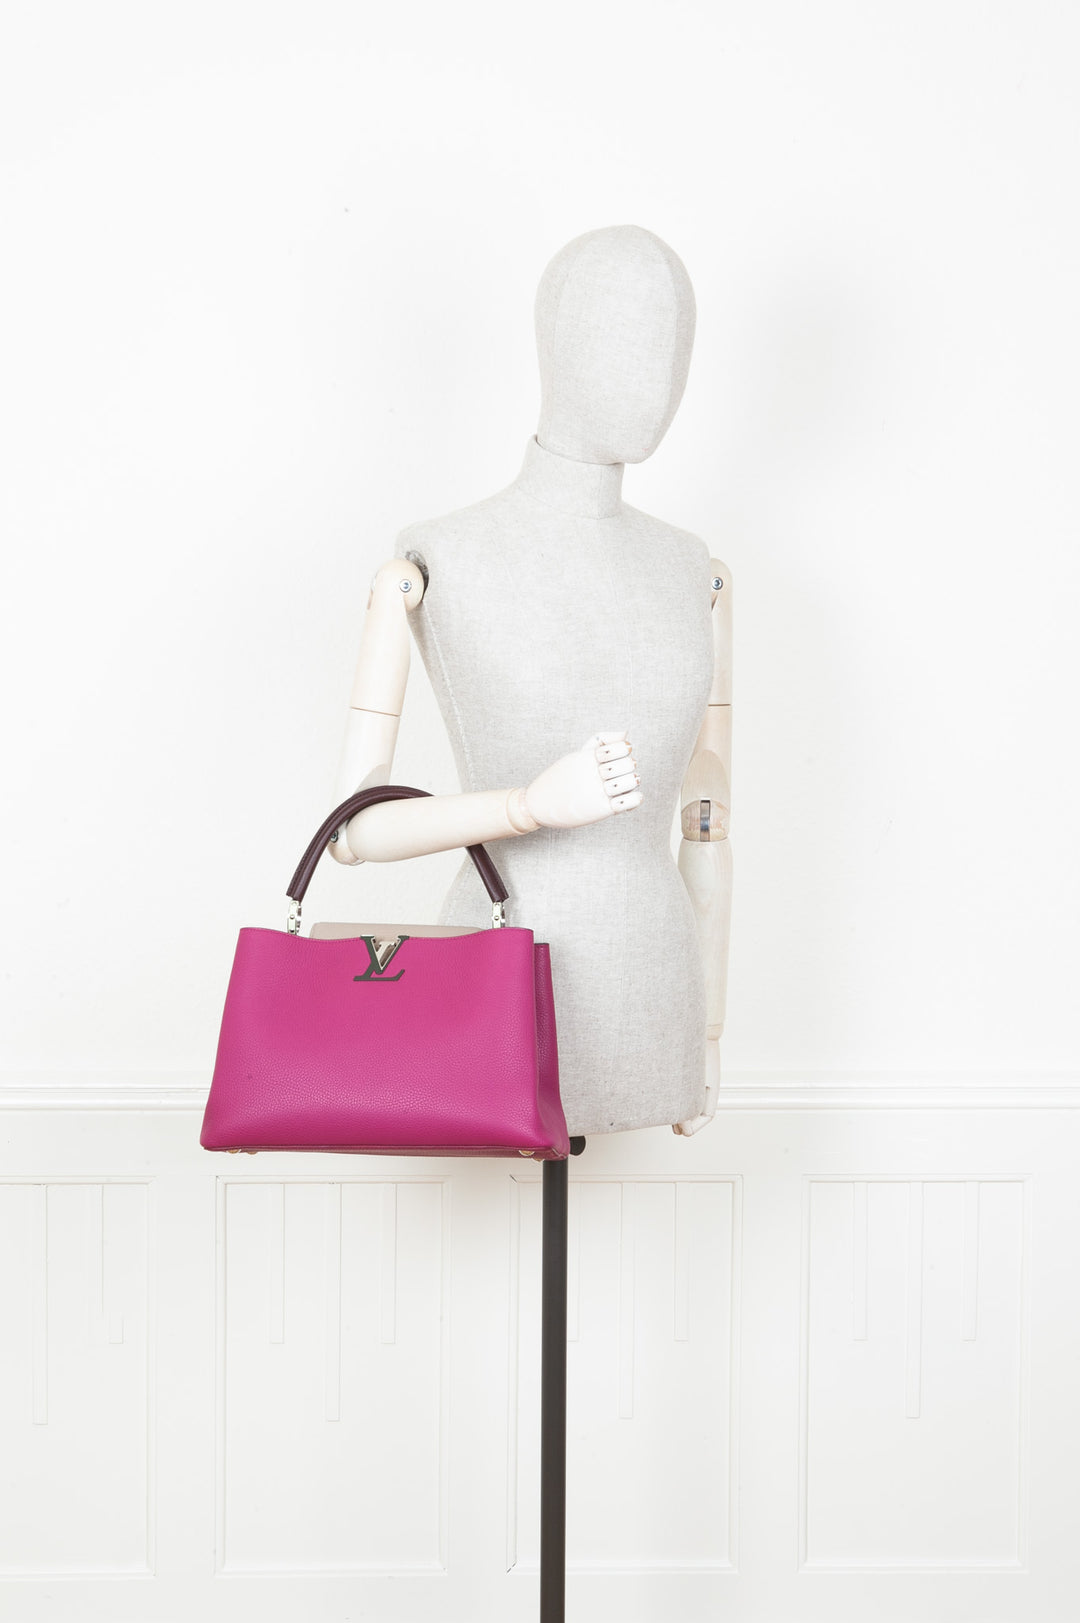 Louis Vuitton Capucines MM Hibiscus Flamingo Bag